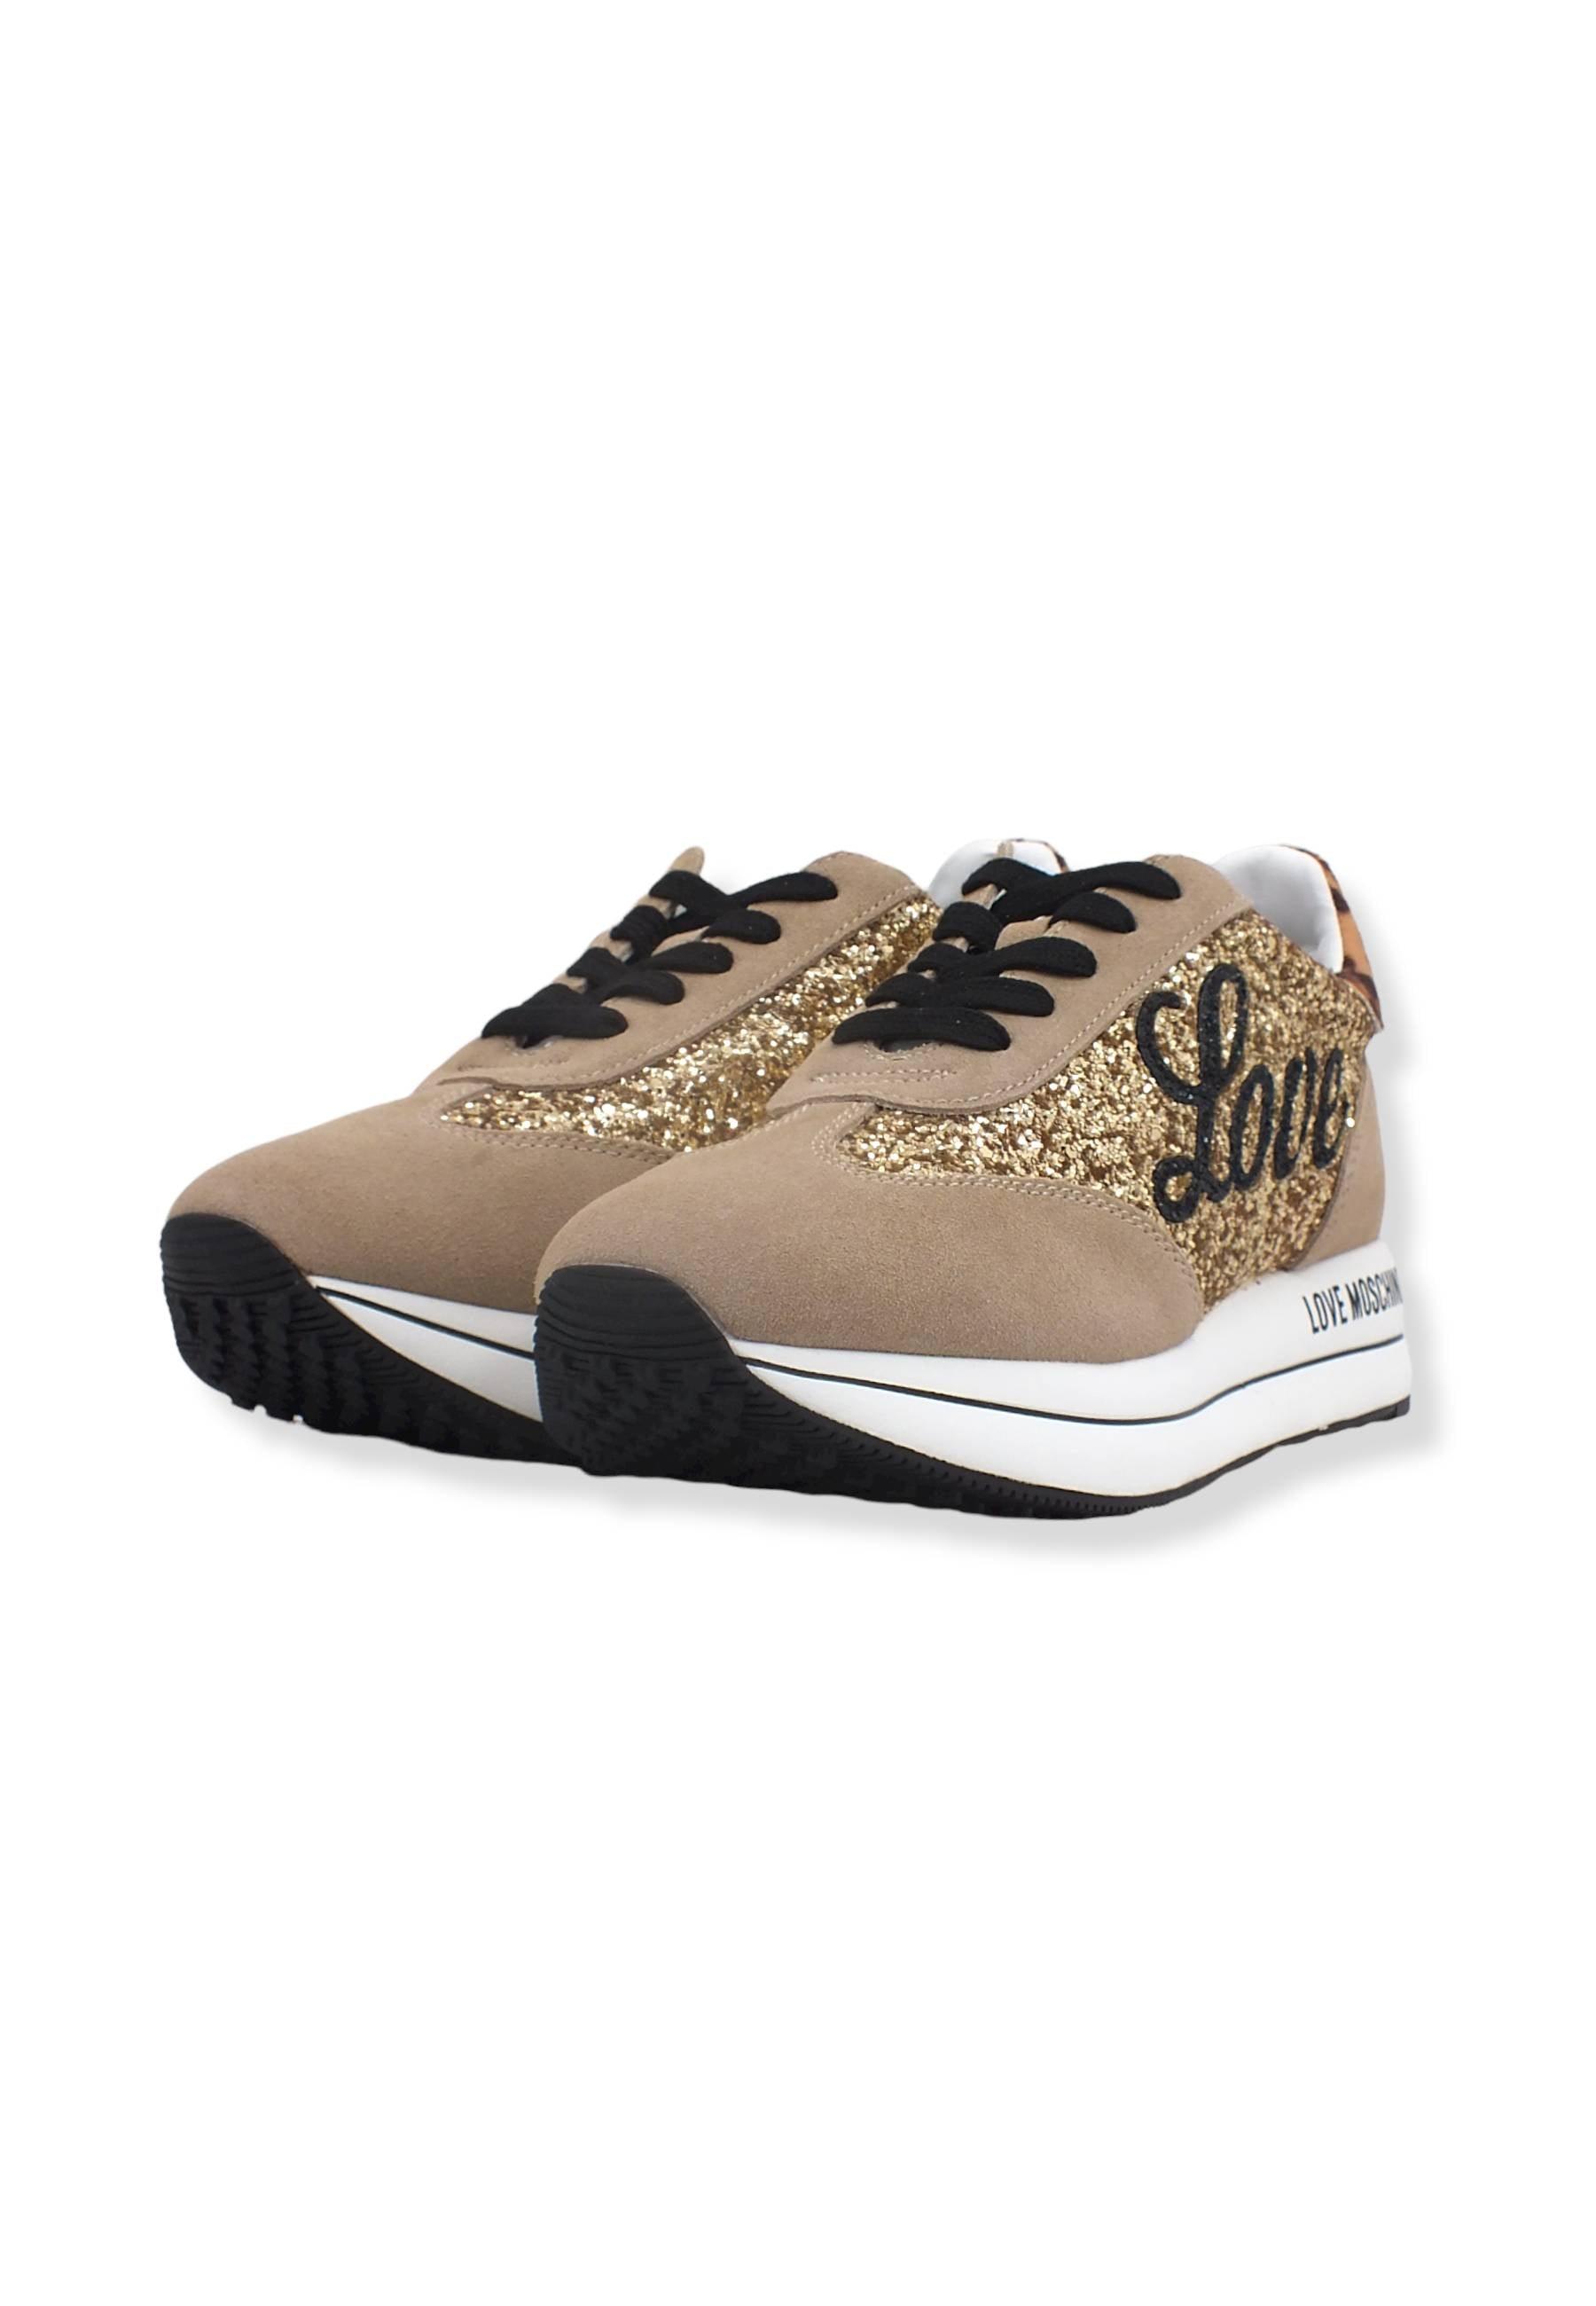 LOVE MOSCHINO Sneaker Donna Glitter Love Oro Platino Beige JA15384G1FJJ390A - Sandrini Calzature e Abbigliamento